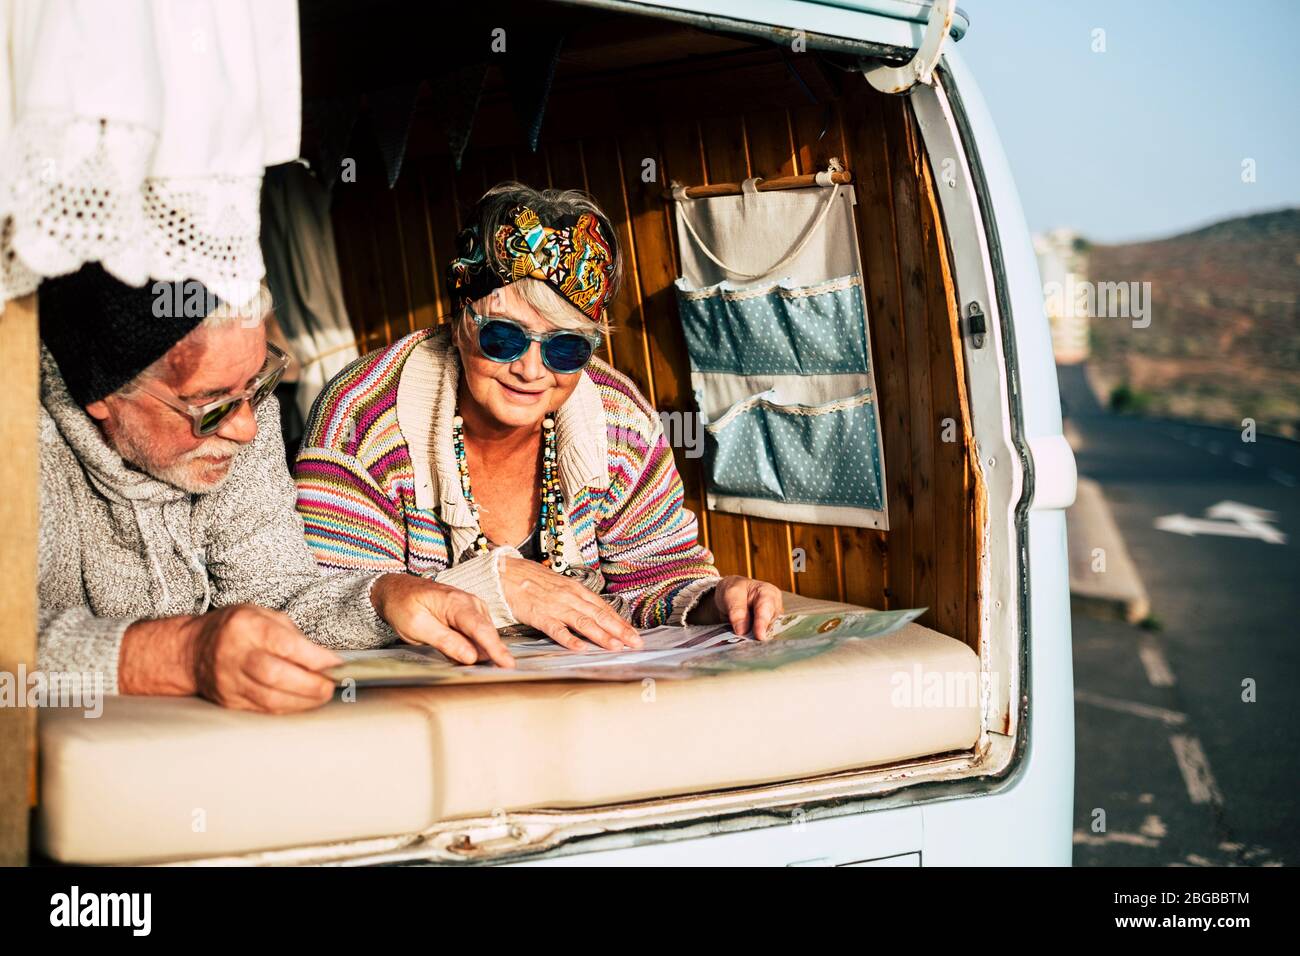 Un couple de personnes âgées heureux appréciez le voyage ensemble dans un vieux véhicule camionnette vintage - concept de changement de vie en âge de retraite - des personnes mûres heureuses à l'intérieur d'un Banque D'Images